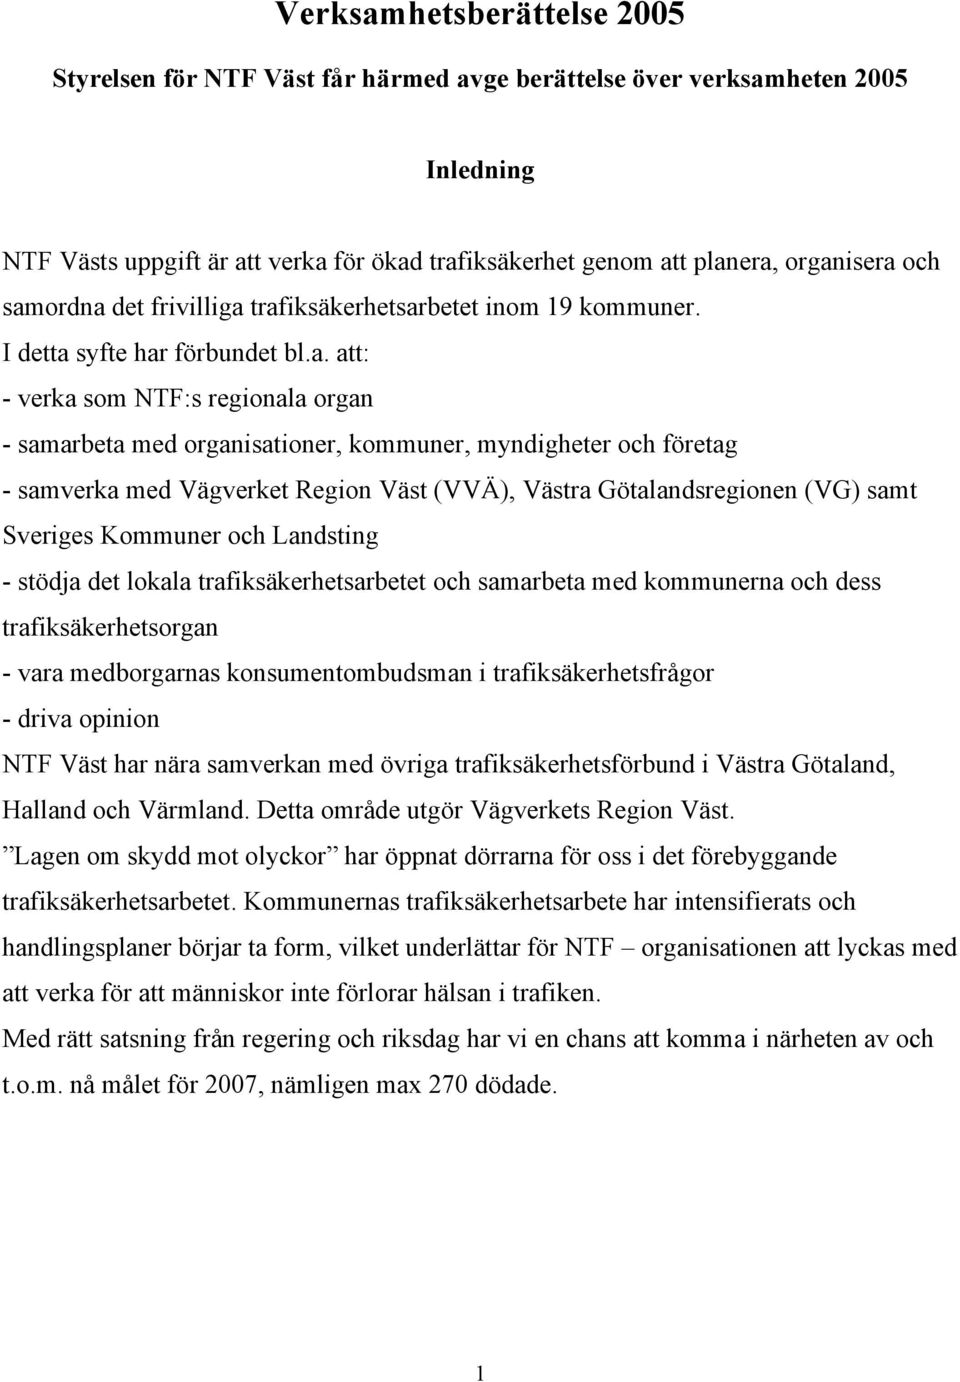 företag - samverka med Vägverket Region Väst (VVÄ), Västra Götalandsregionen (VG) samt Sveriges Kommuner och Landsting - stödja det lokala trafiksäkerhetsarbetet och samarbeta med kommunerna och dess